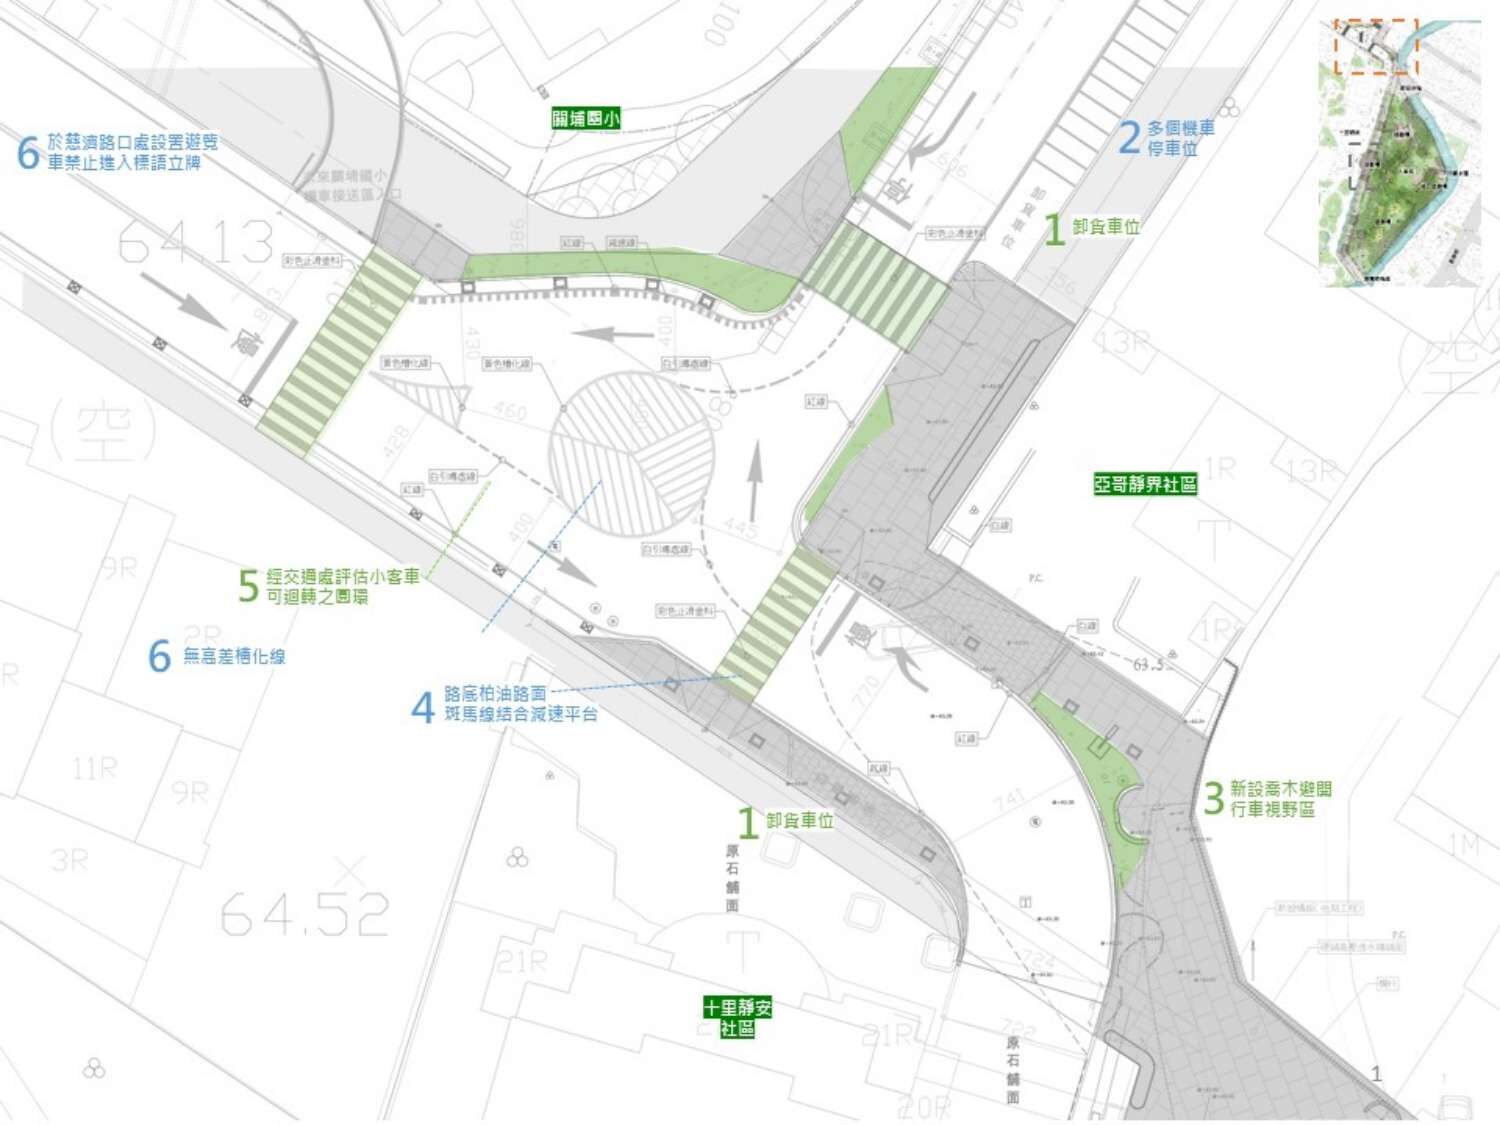 長春公園鄰近龍山東路未來交通改善計畫示意圖。